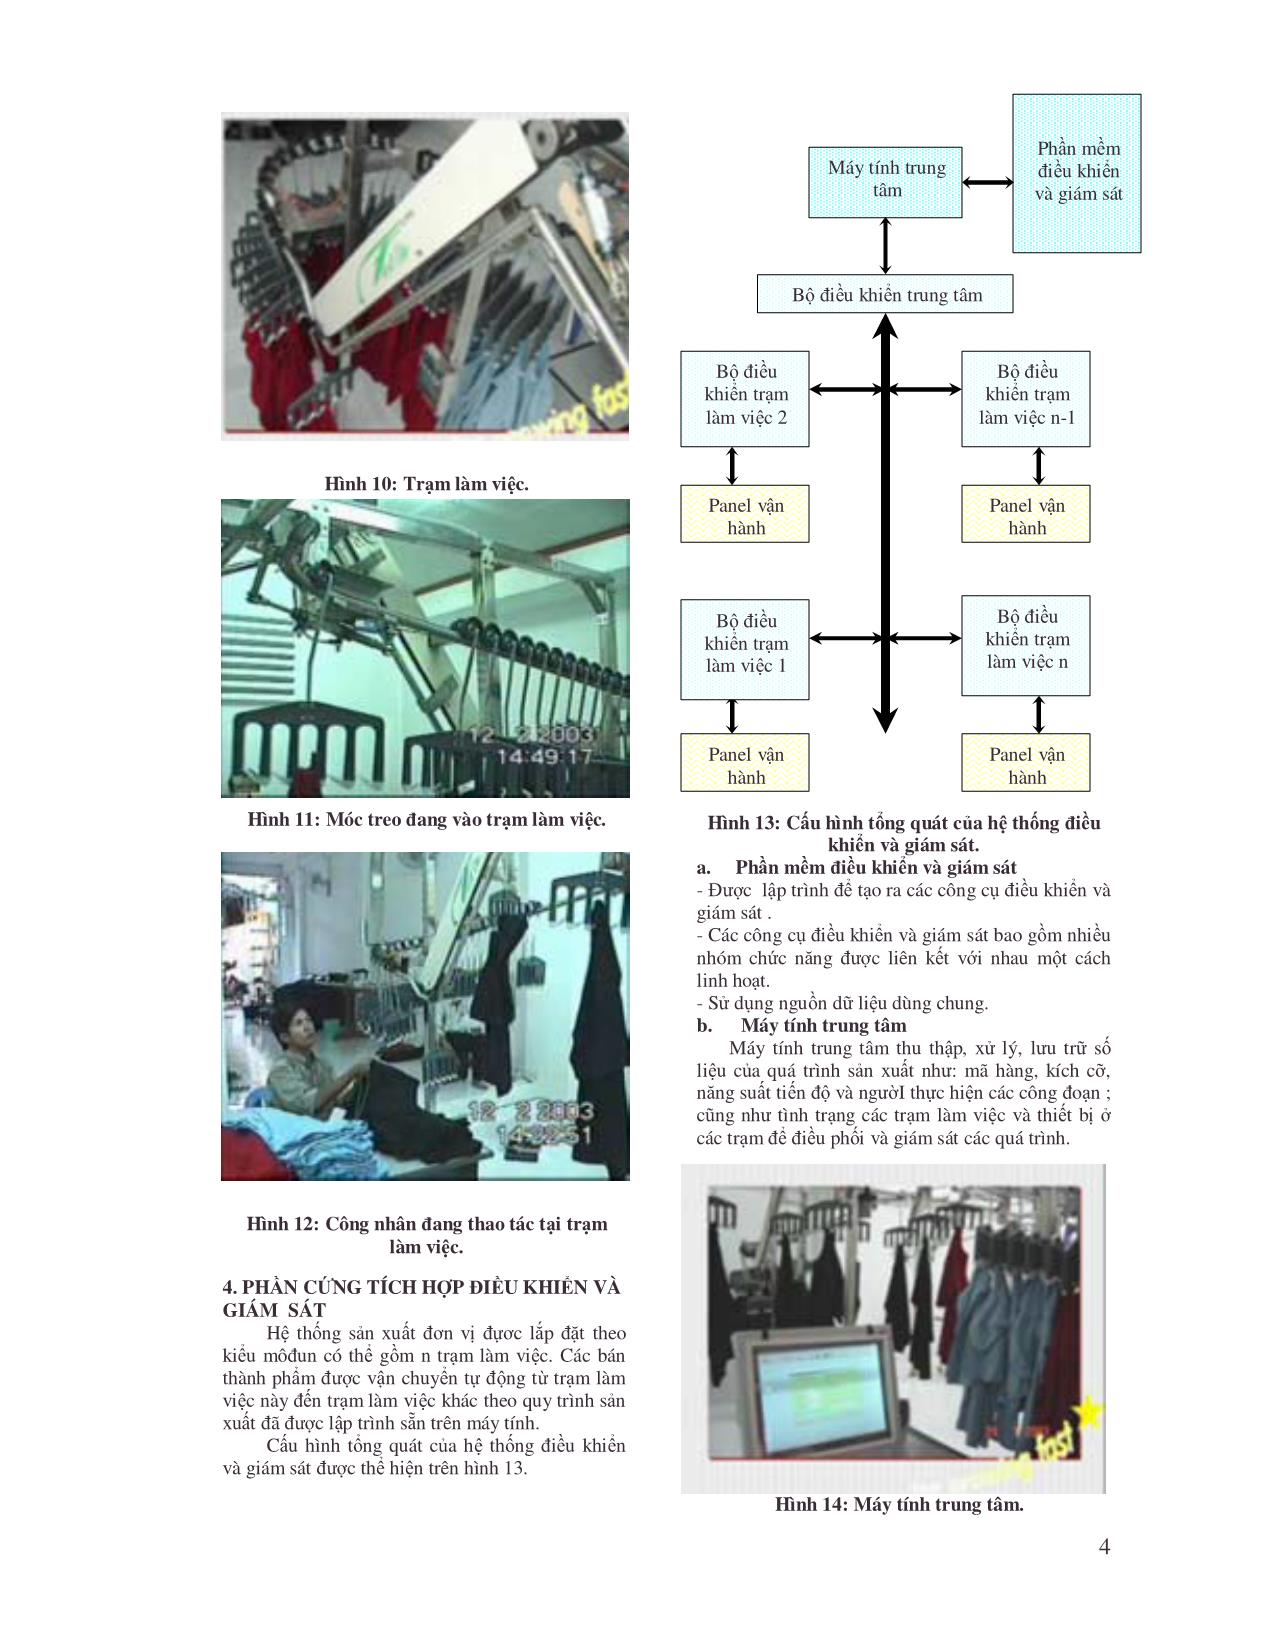 Thiết kế và phát triển phần cứng tích hợp điều khiển và giám sát cho hệ thống sản xuất đơn vị trang 4